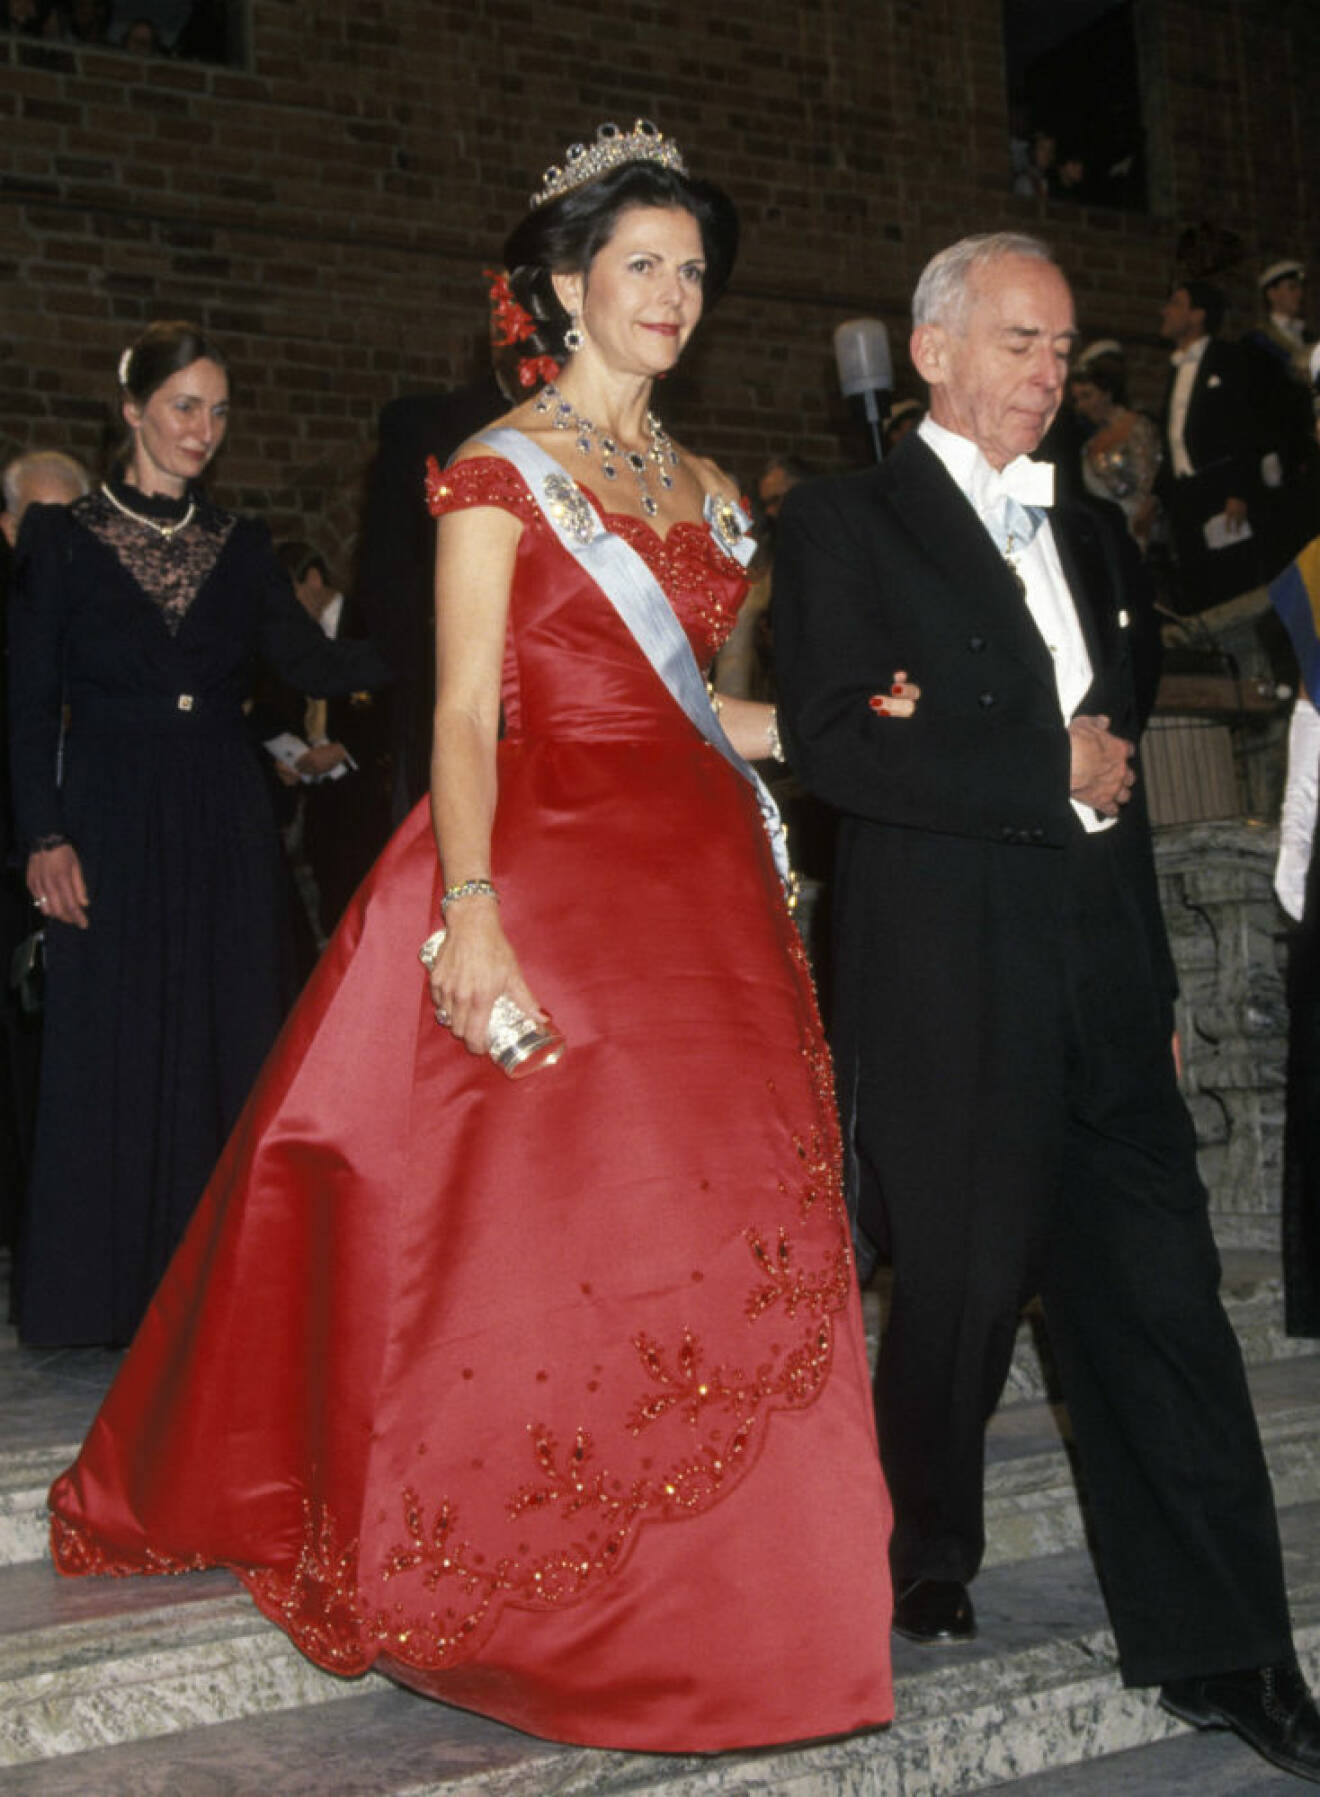 1991 Klänning av Jörgen Bender som skapades för danska drottning Margrethes 50-årsdag och återanvändes på nobelfesten